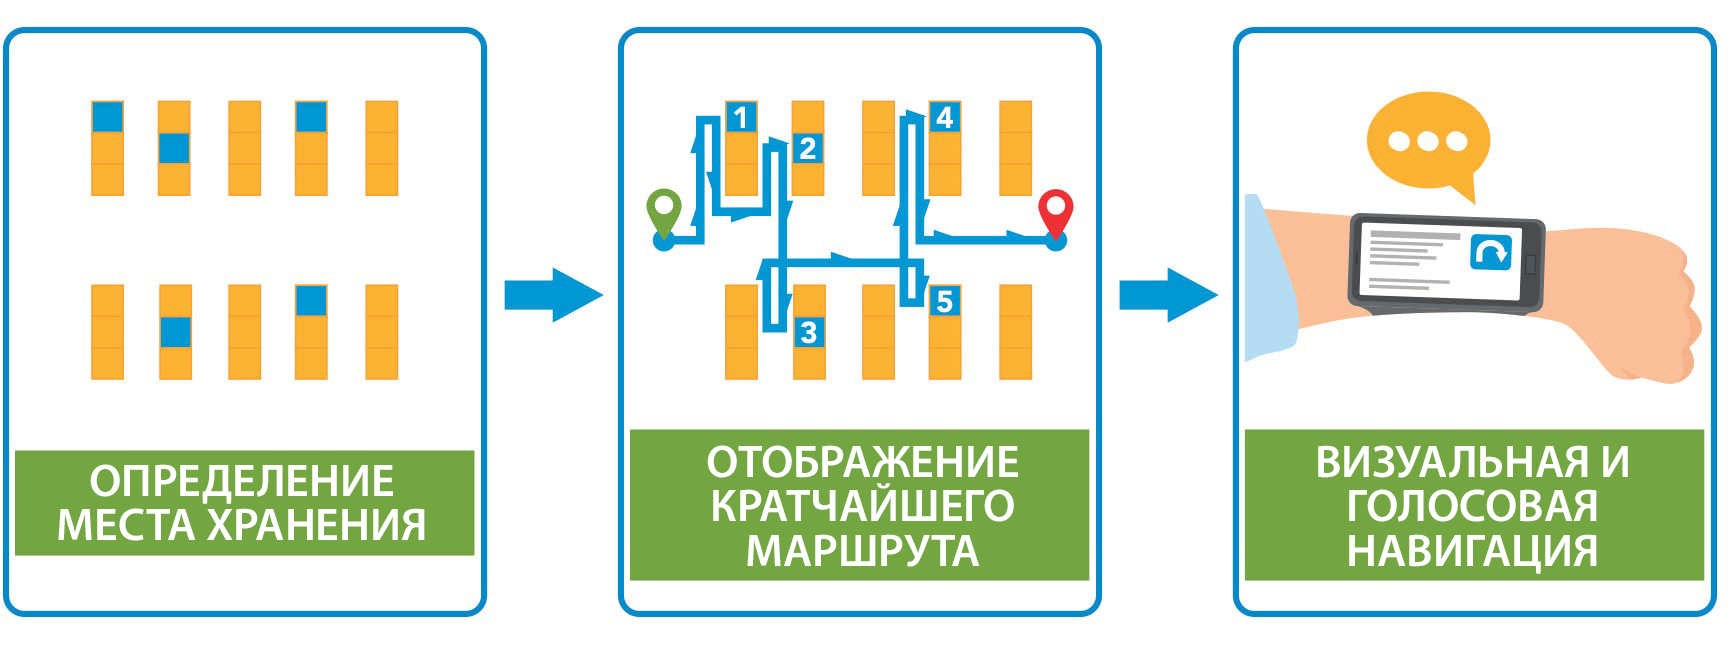 Идентификация склада > Отображение кратчайшего маршрута > изображение и карта; голосовая навигация